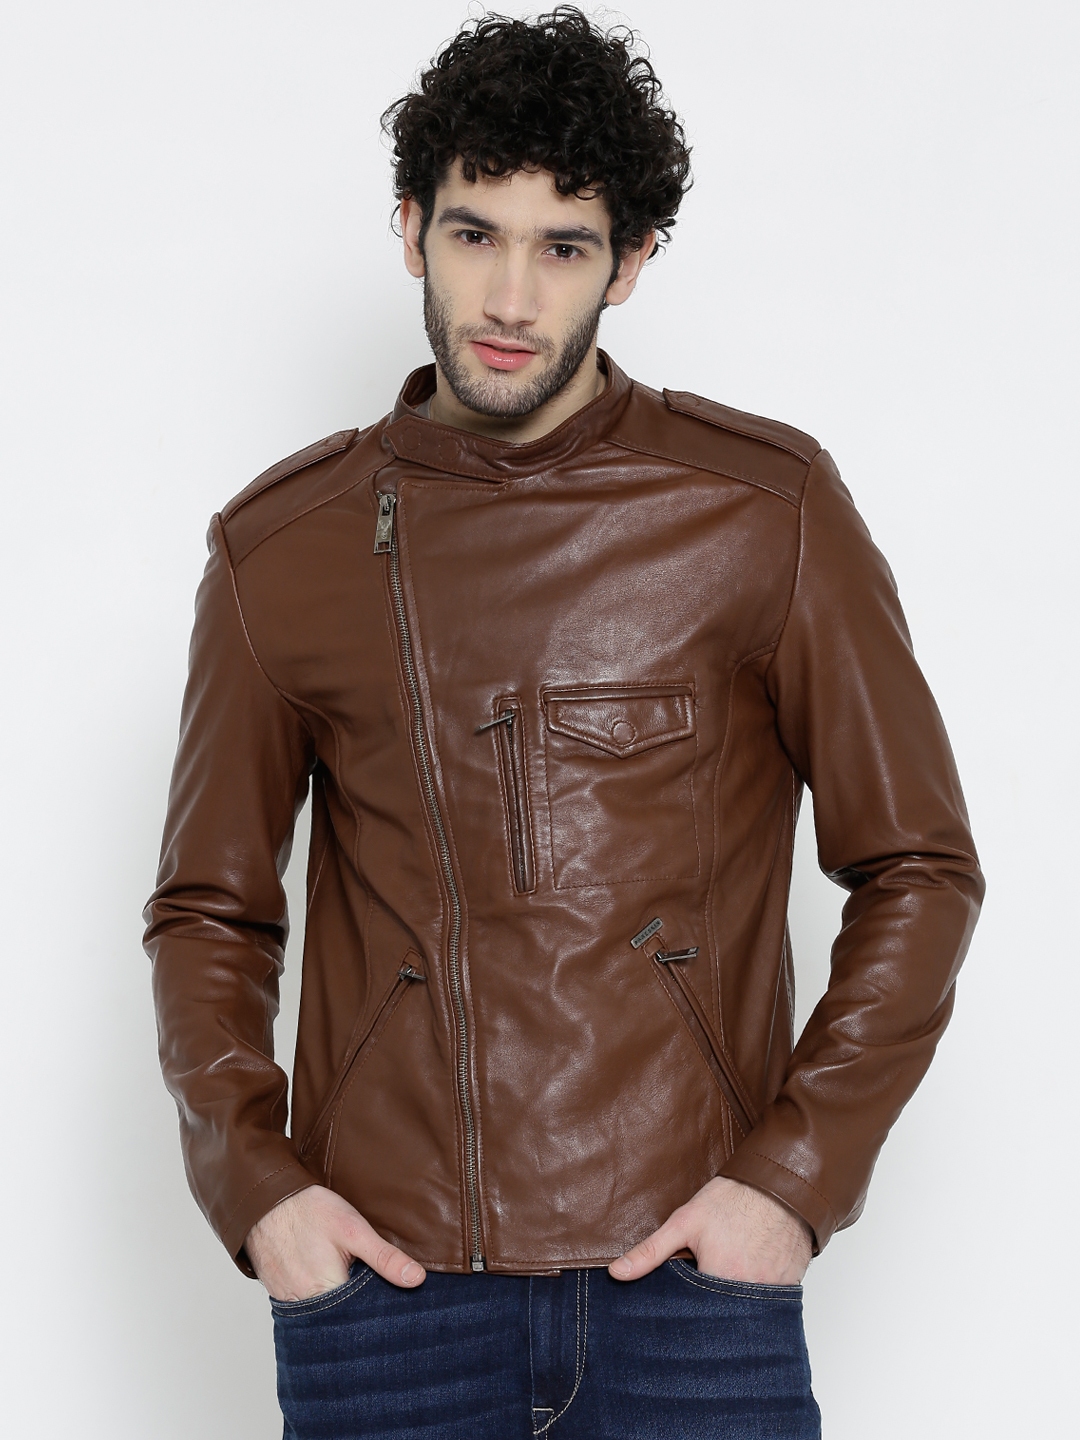 Buy BARESKIN Brown Leather Biker Jacket - Jackets for Men 1139687 | Myntra